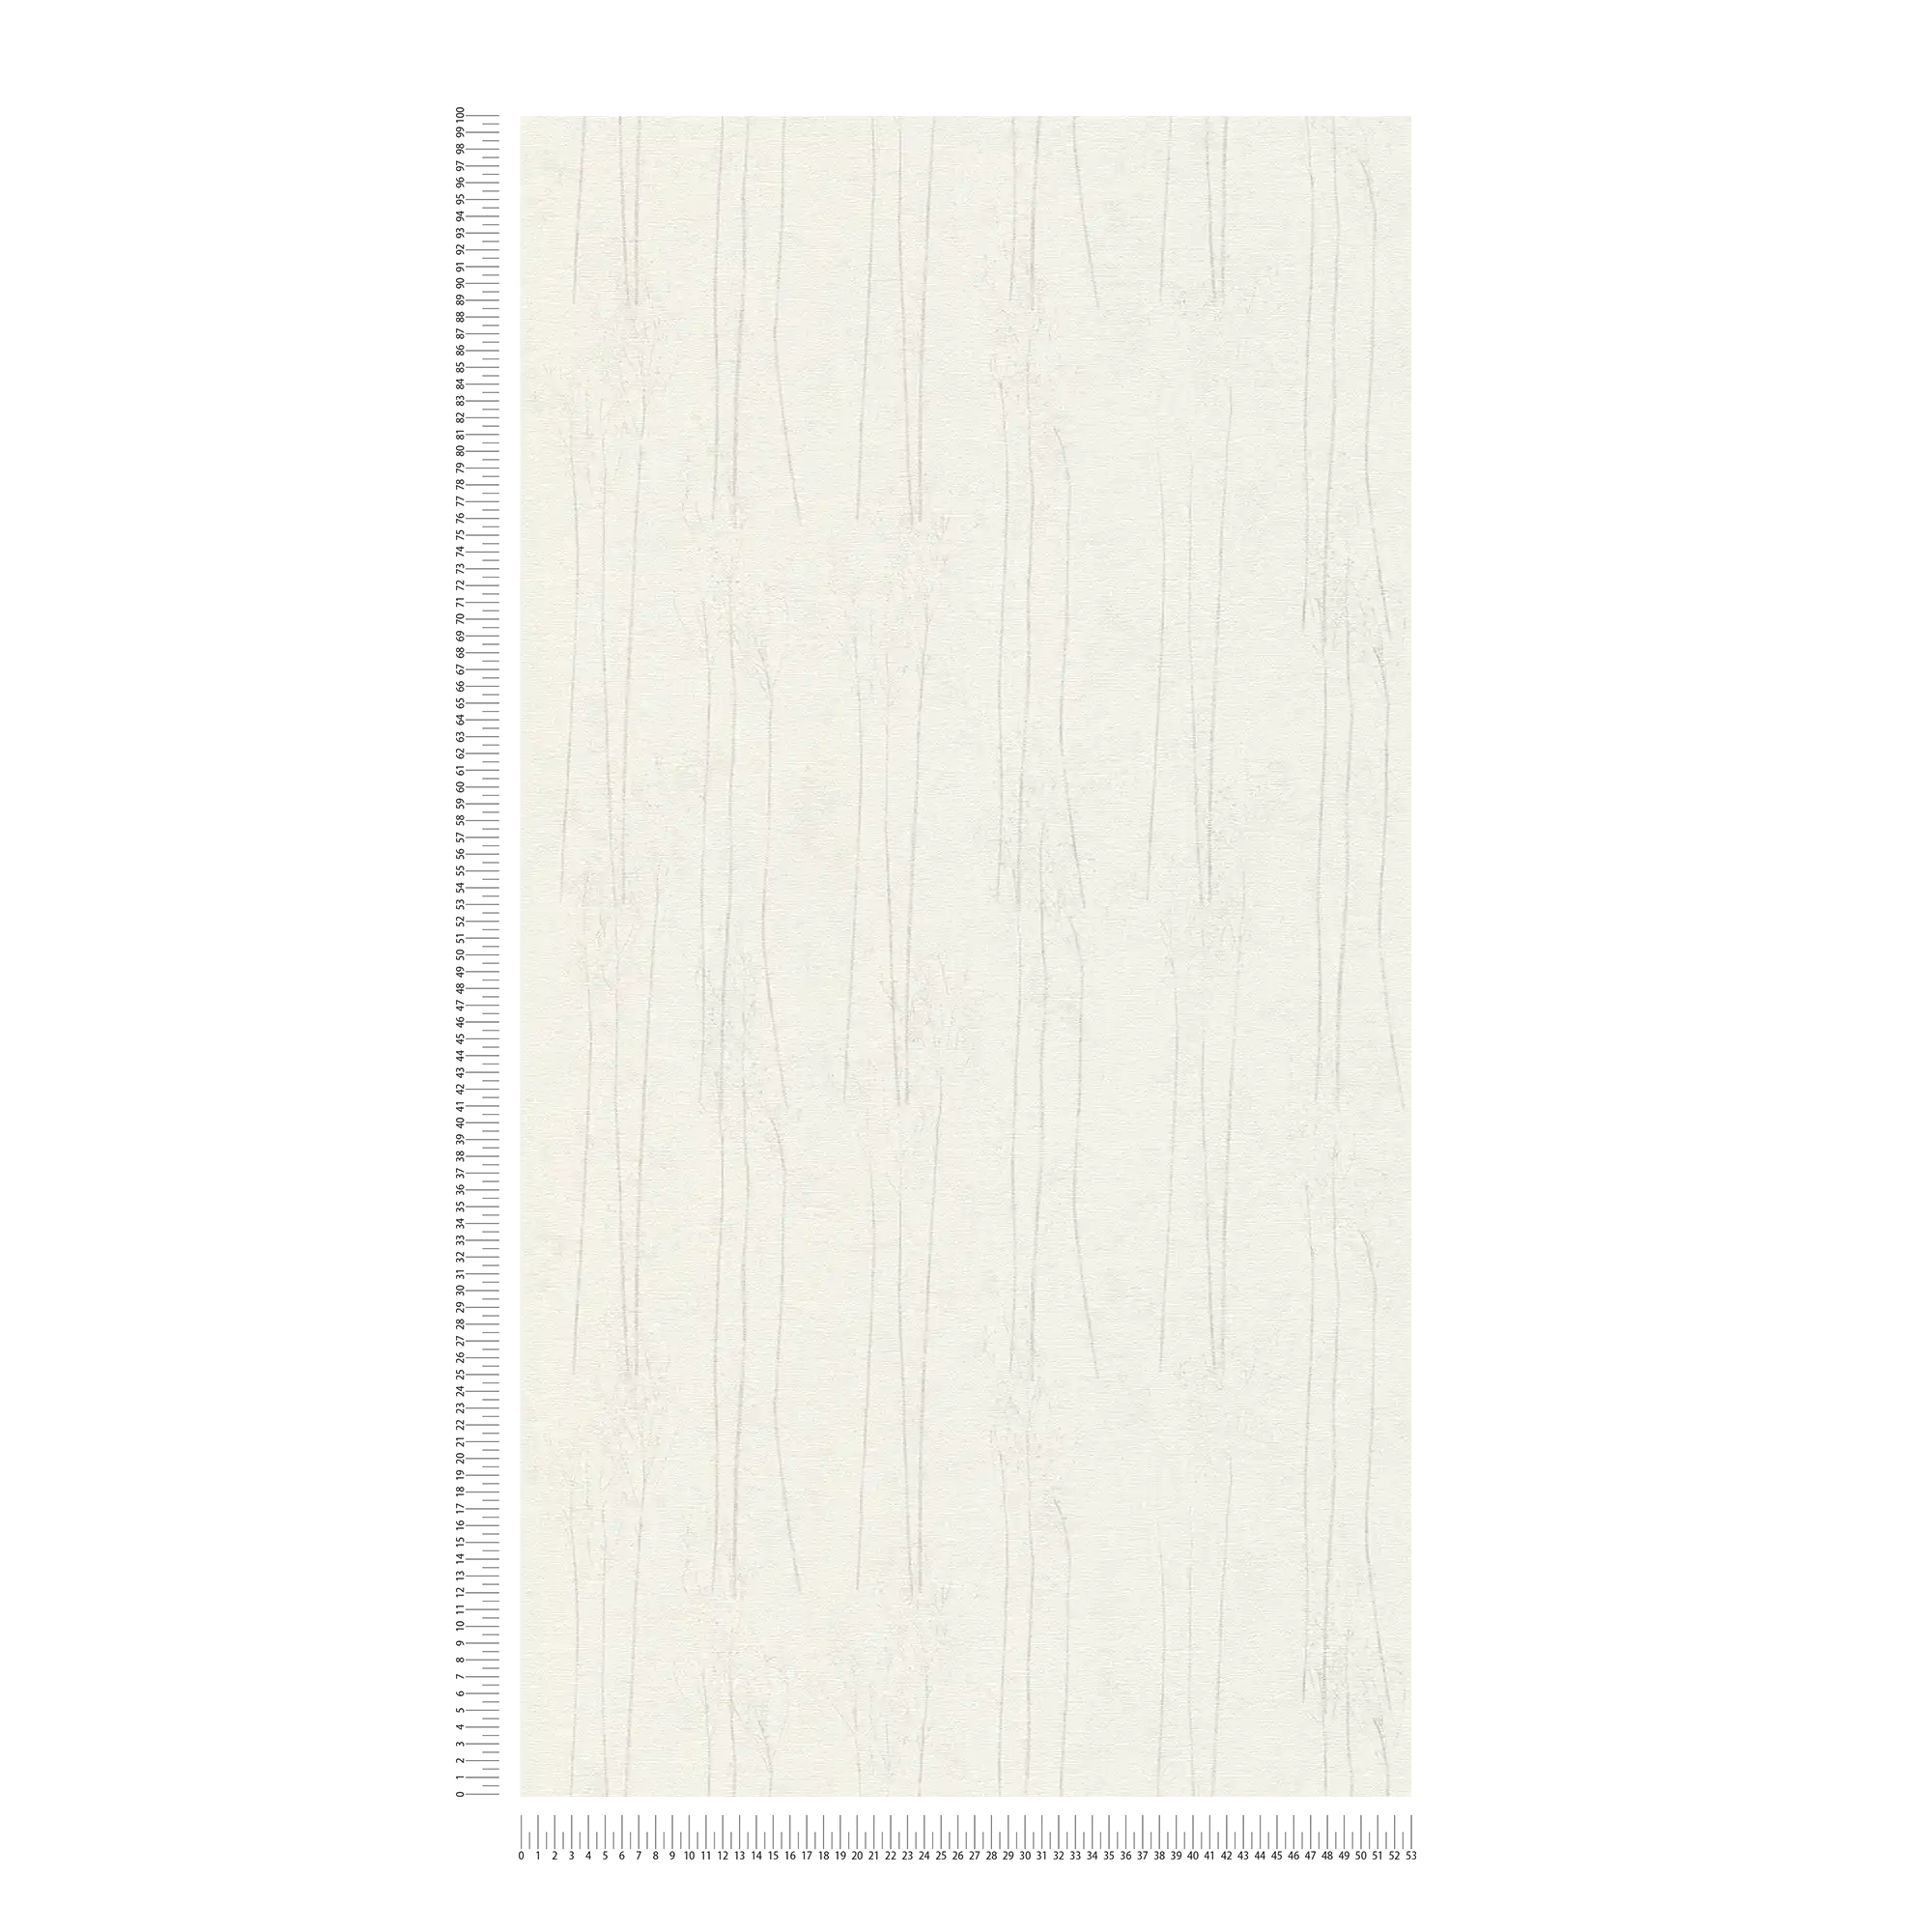             Wit behang Scandi stijl met natuurmotief - grijs, wit
        